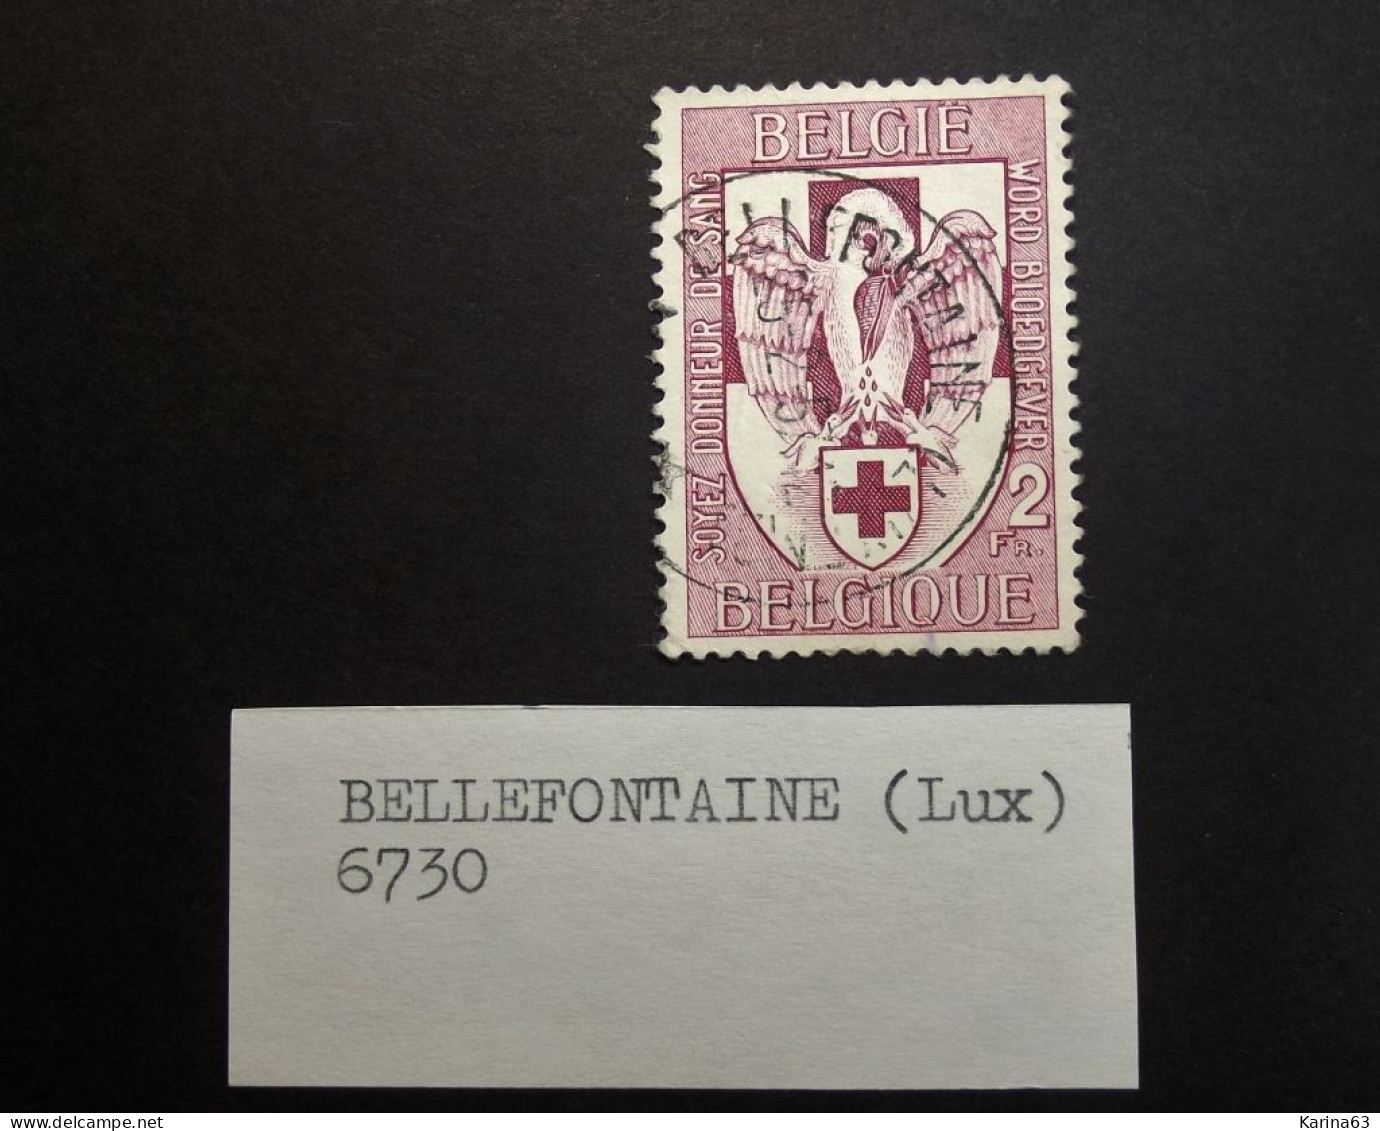 Belgie Belgique - 1956 -  OPB/COB  N° 986 - 2 F - Obl.  - Bellefontaine - 6730 - Gebruikt